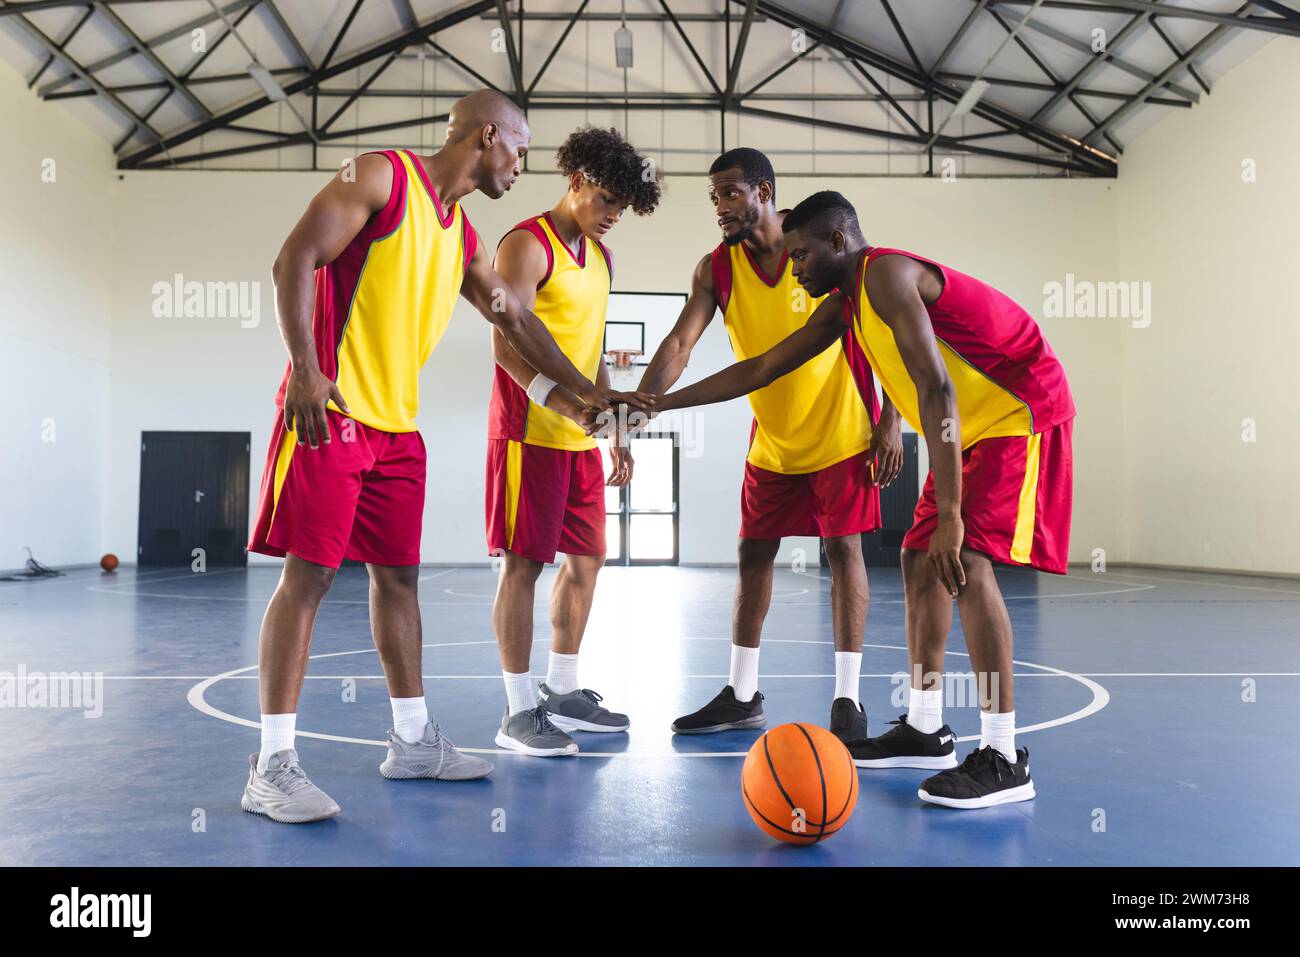 L'équipe de basket-ball se réunit sur un terrain couvert Banque D'Images